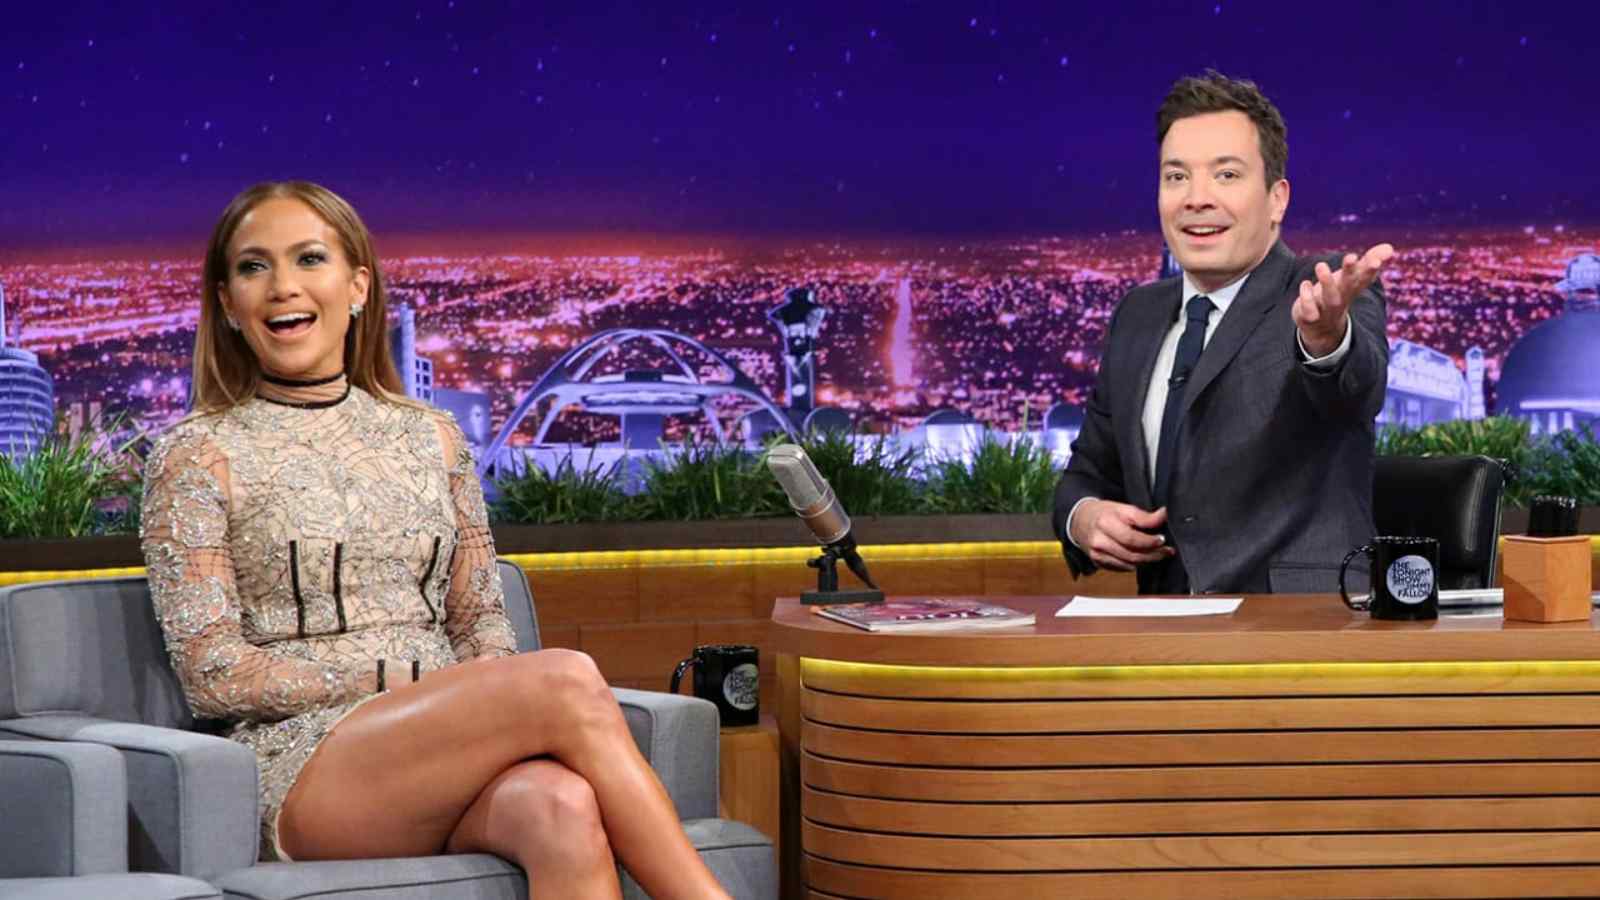 Jennifer Lopez on Jimmy Fallon's show